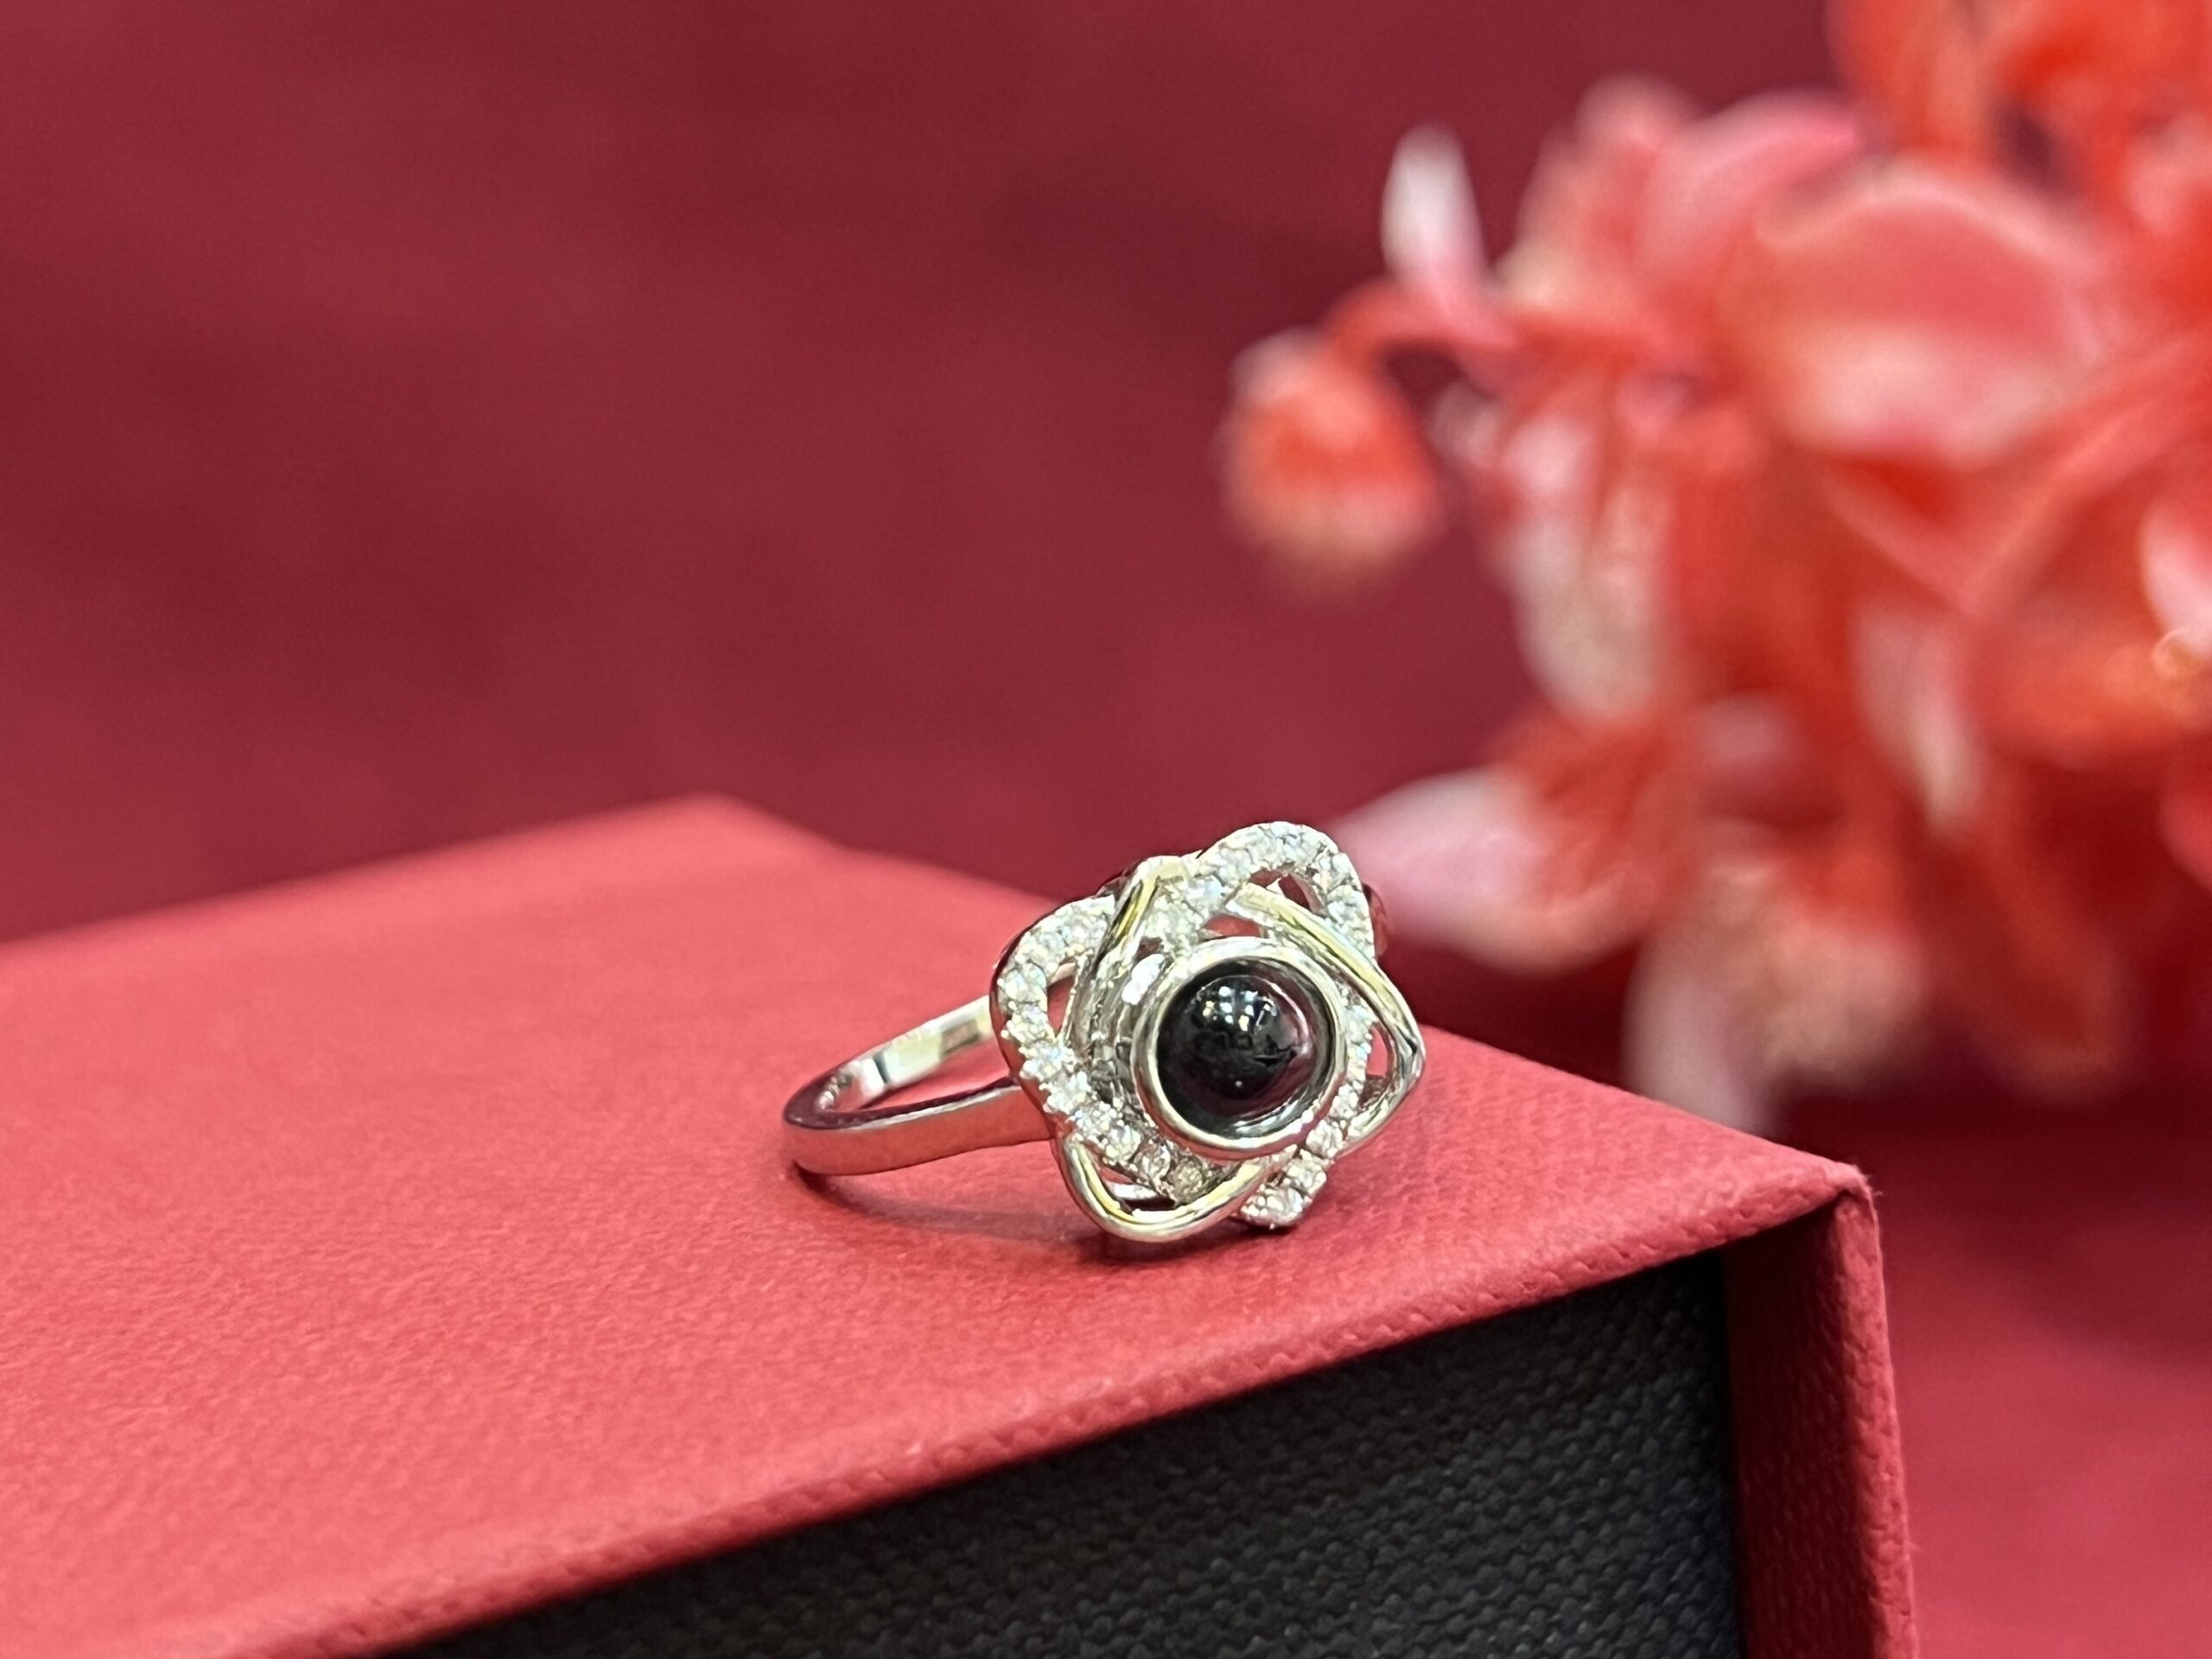 silver ring benefits wear silver to shine your luck and health | Silver  Ring Benefits: चांदी का इस रूप में इस्तेमाल है लाभकारी, किस्मत चमकाने के  लिए यूं पहने चांदी